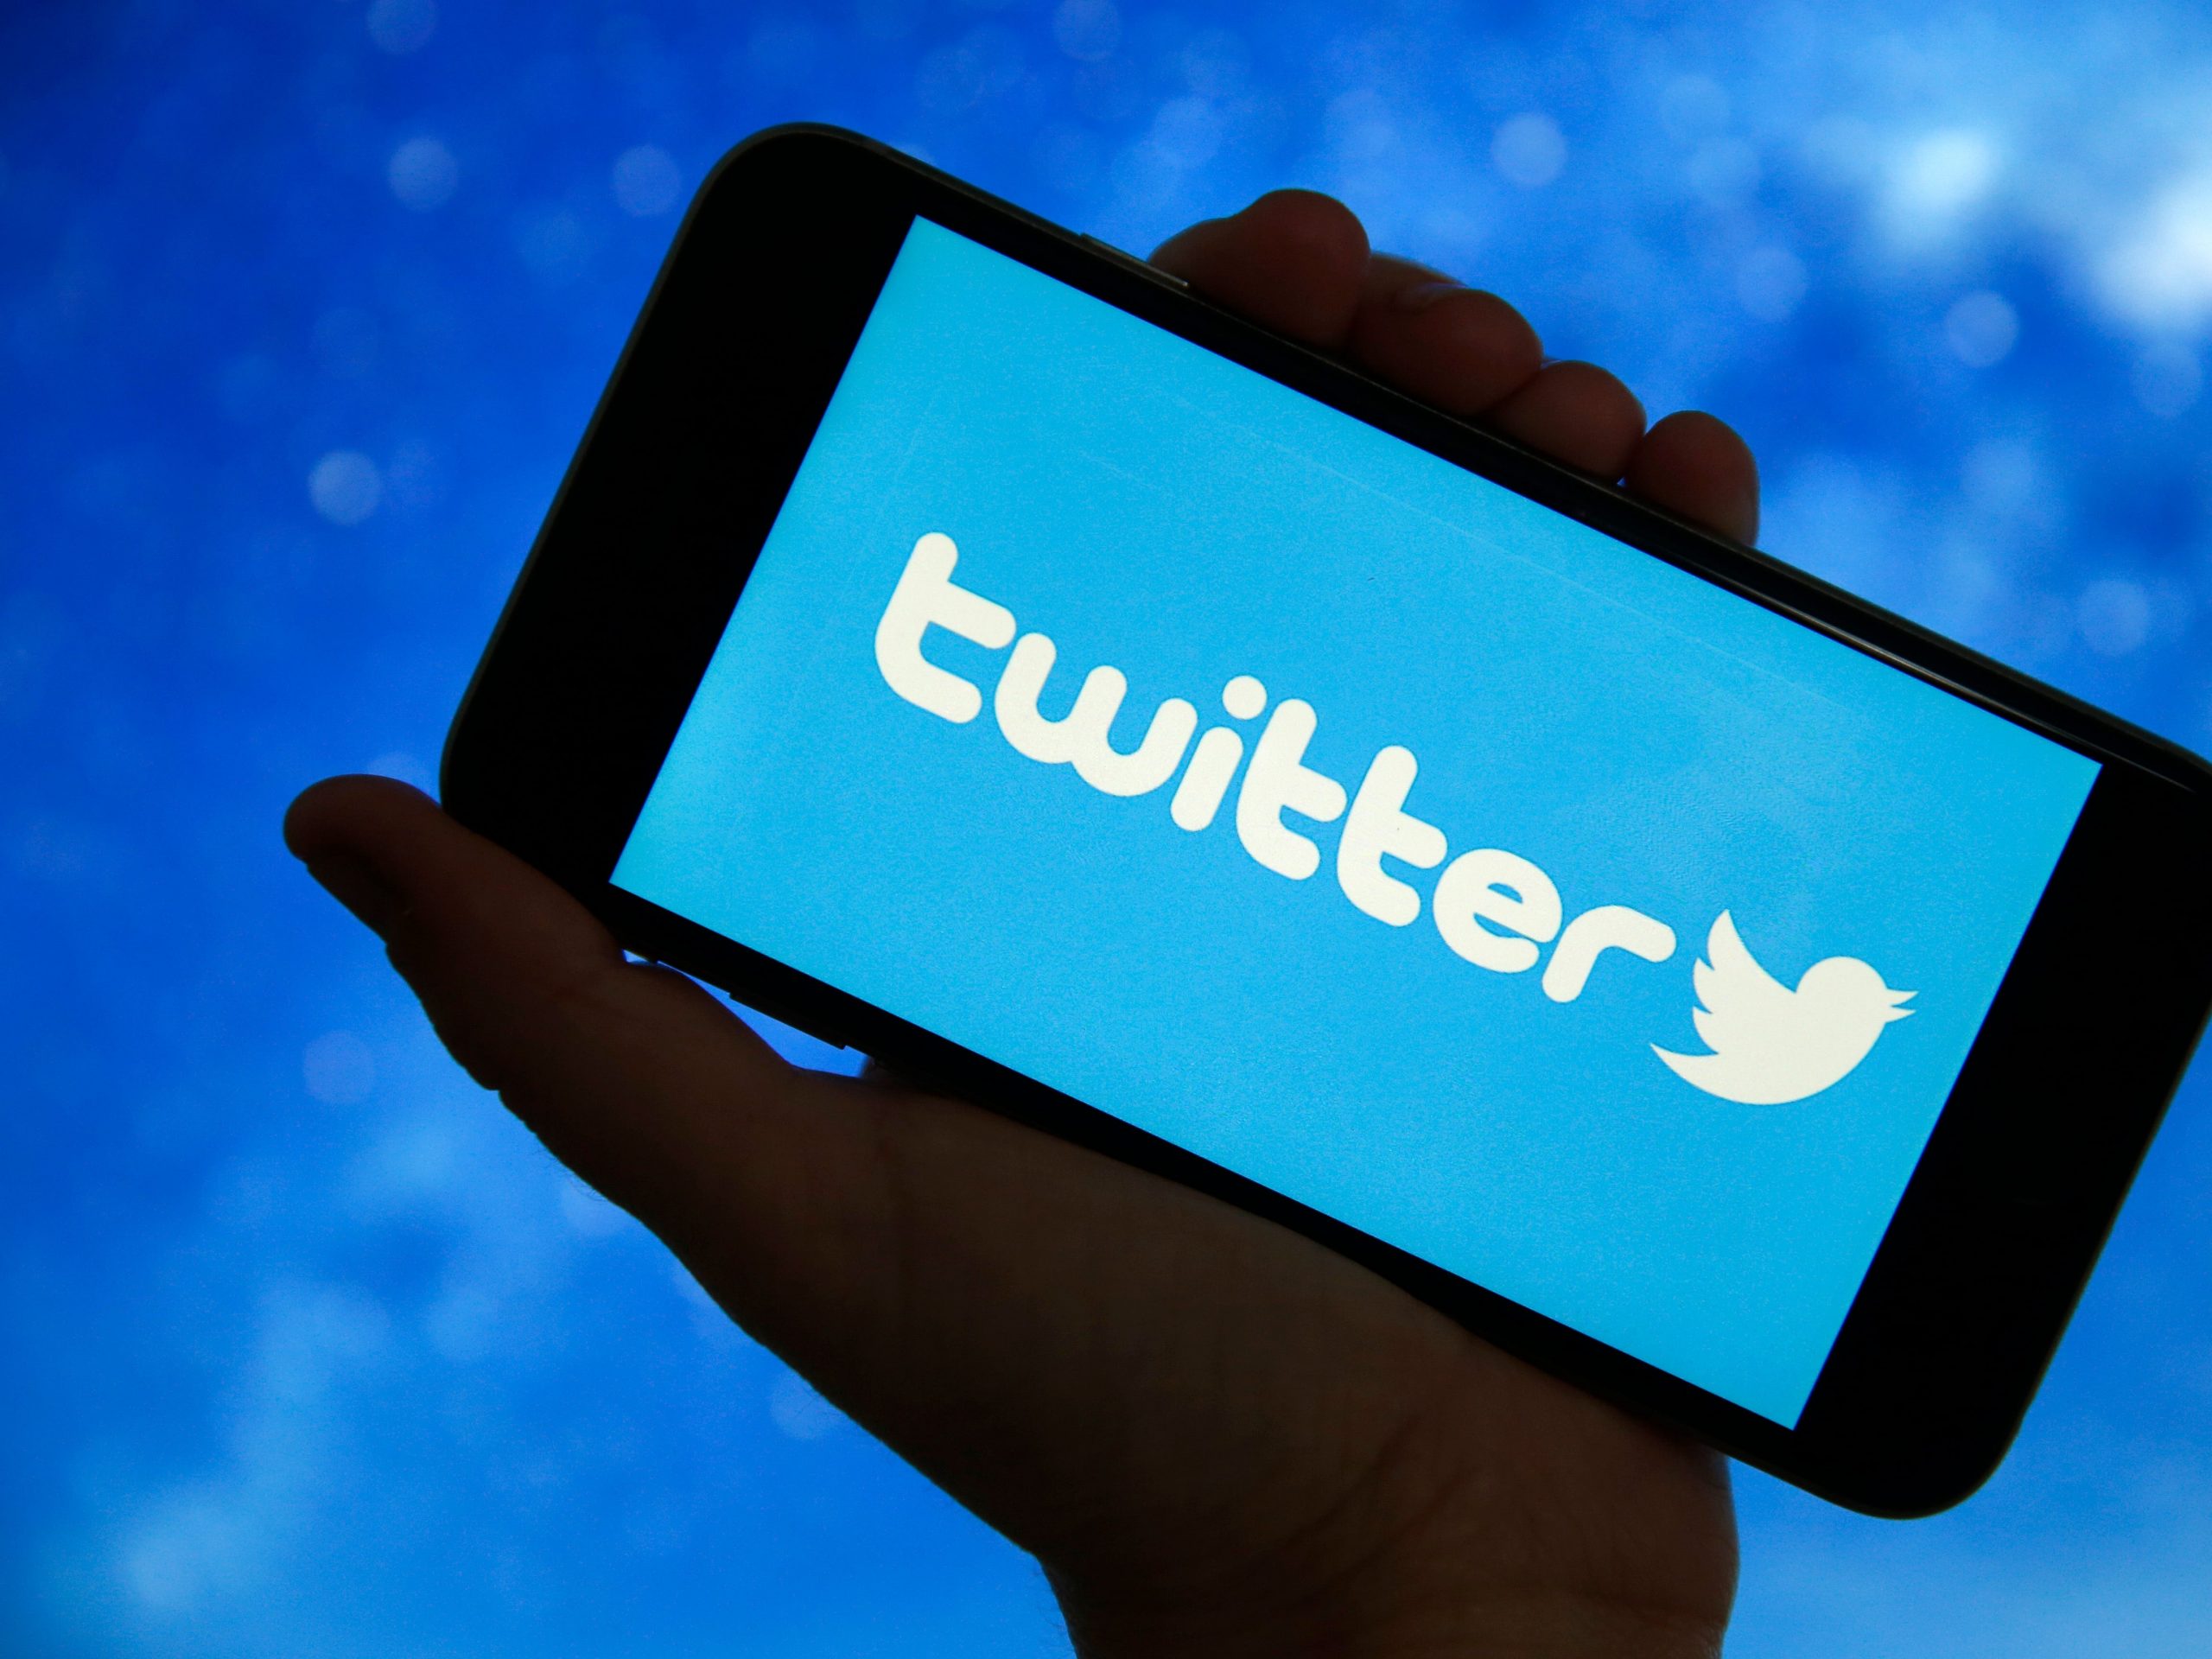 Het Twitter-logo wordt weergegeven op het scherm van een smartphone.